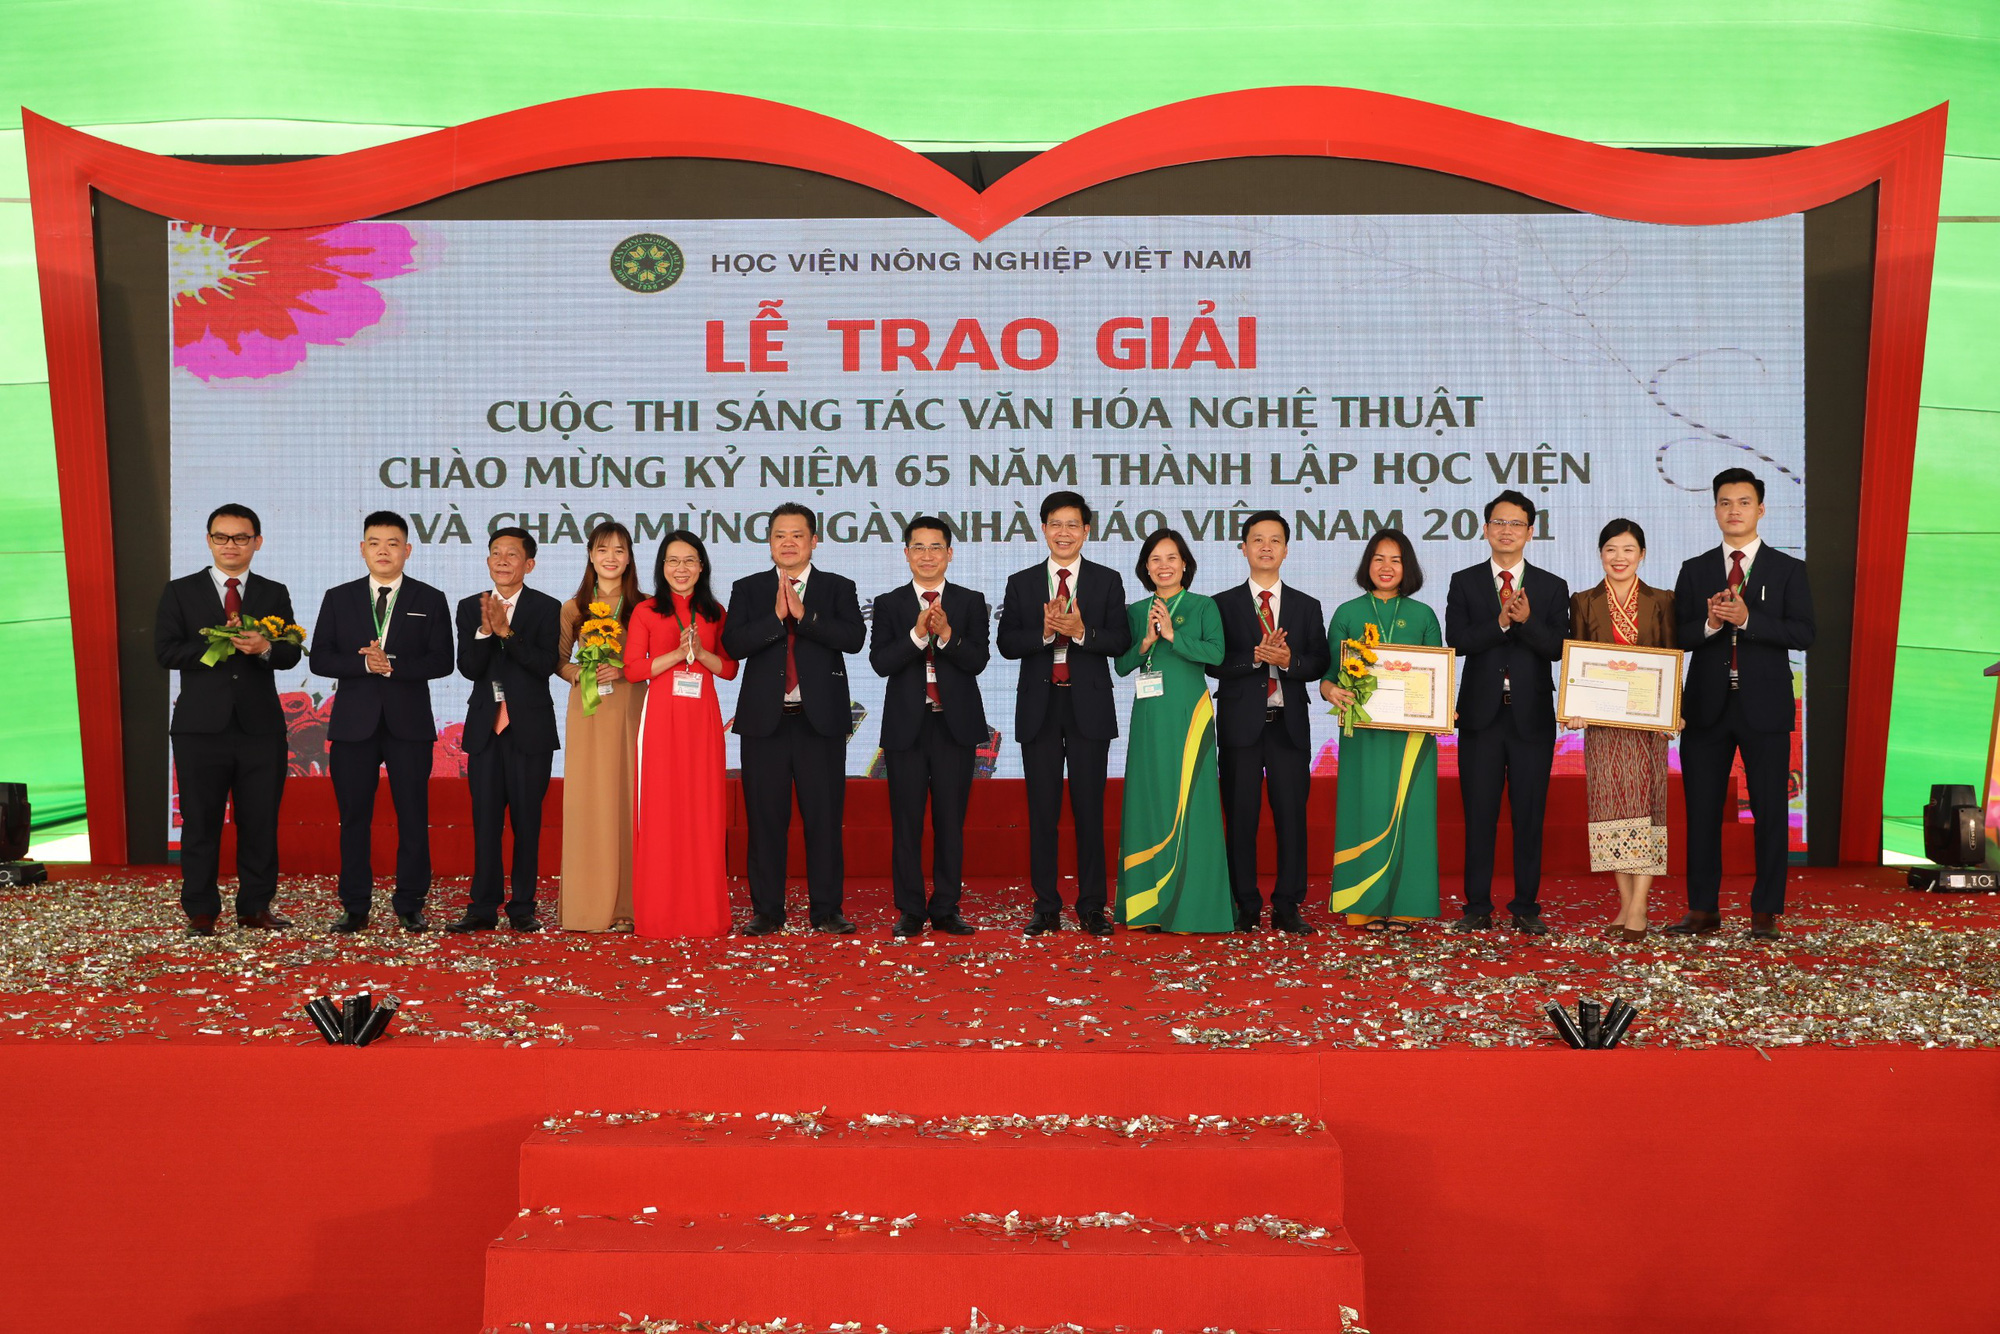 Học viện Nông nghiệp Việt Nam tạo cảm hứng sáng tác cho nhiều tác phẩm văn học, nghệ thuật - Ảnh 3.